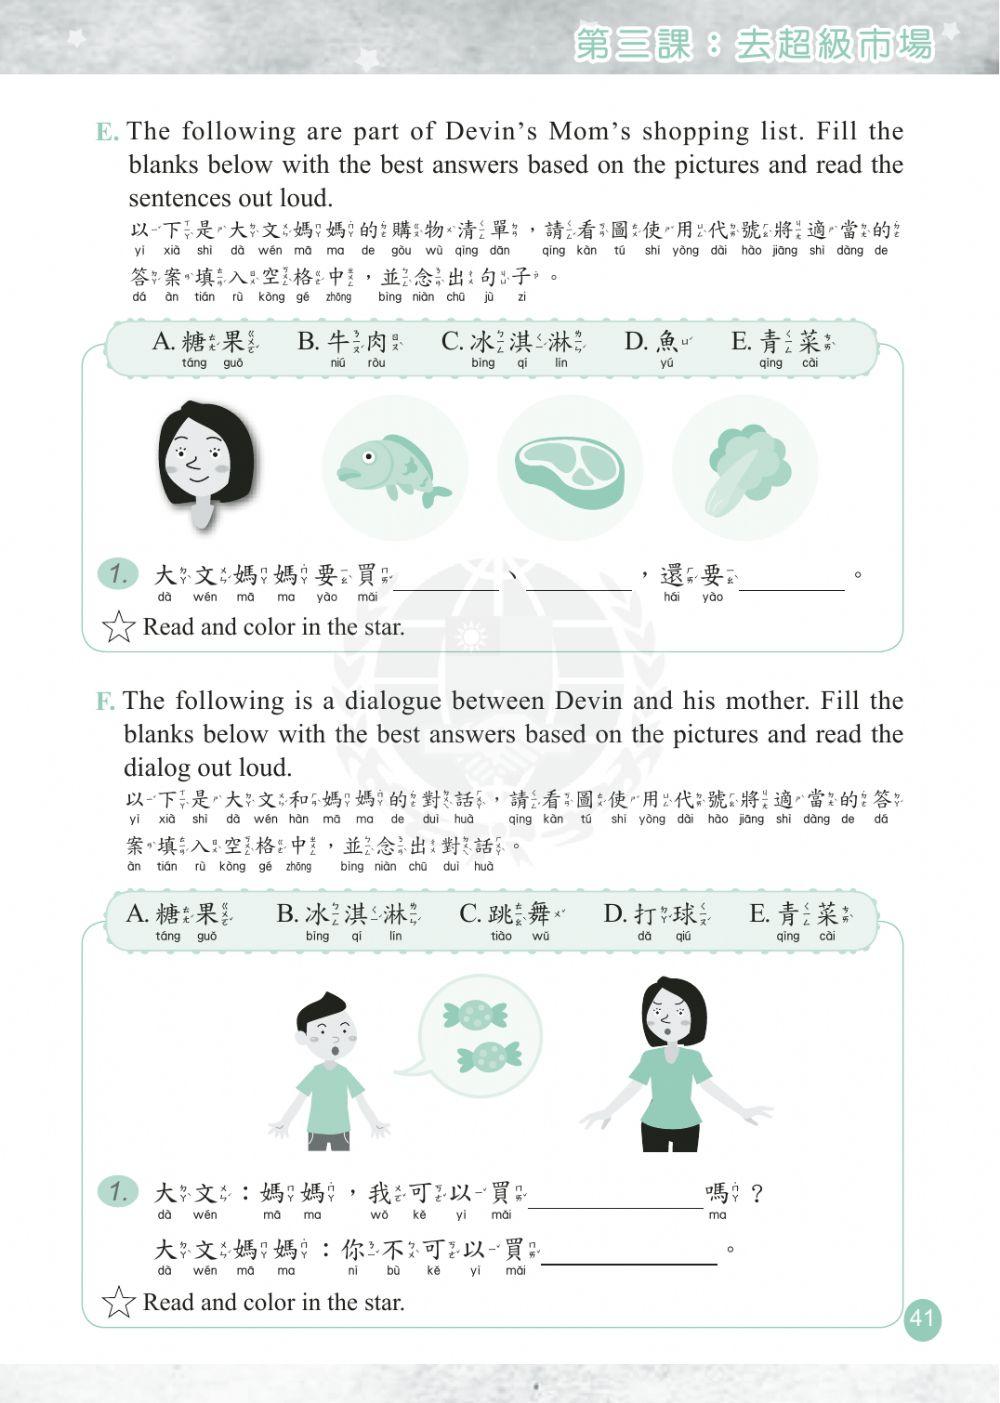 学华语向前走第二册第三课练习题